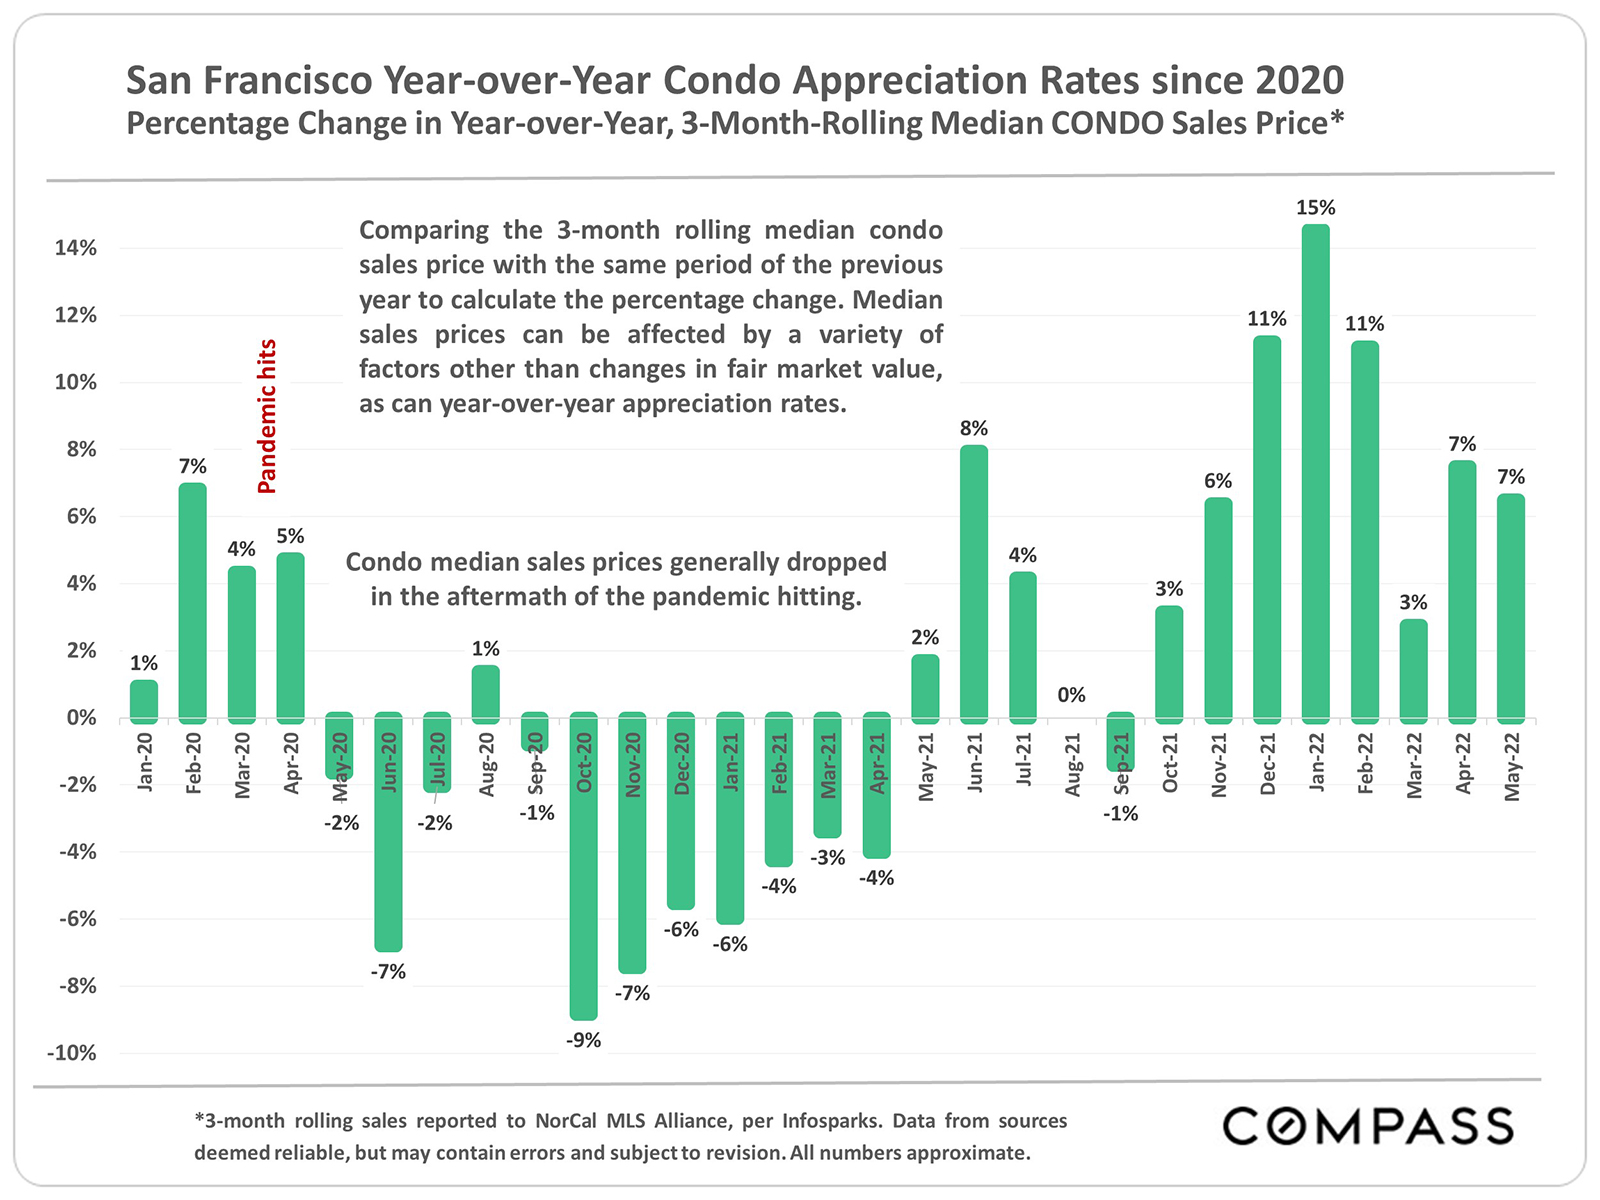 San Francisco Year over Year Condo Appreciation Rates Since 2020